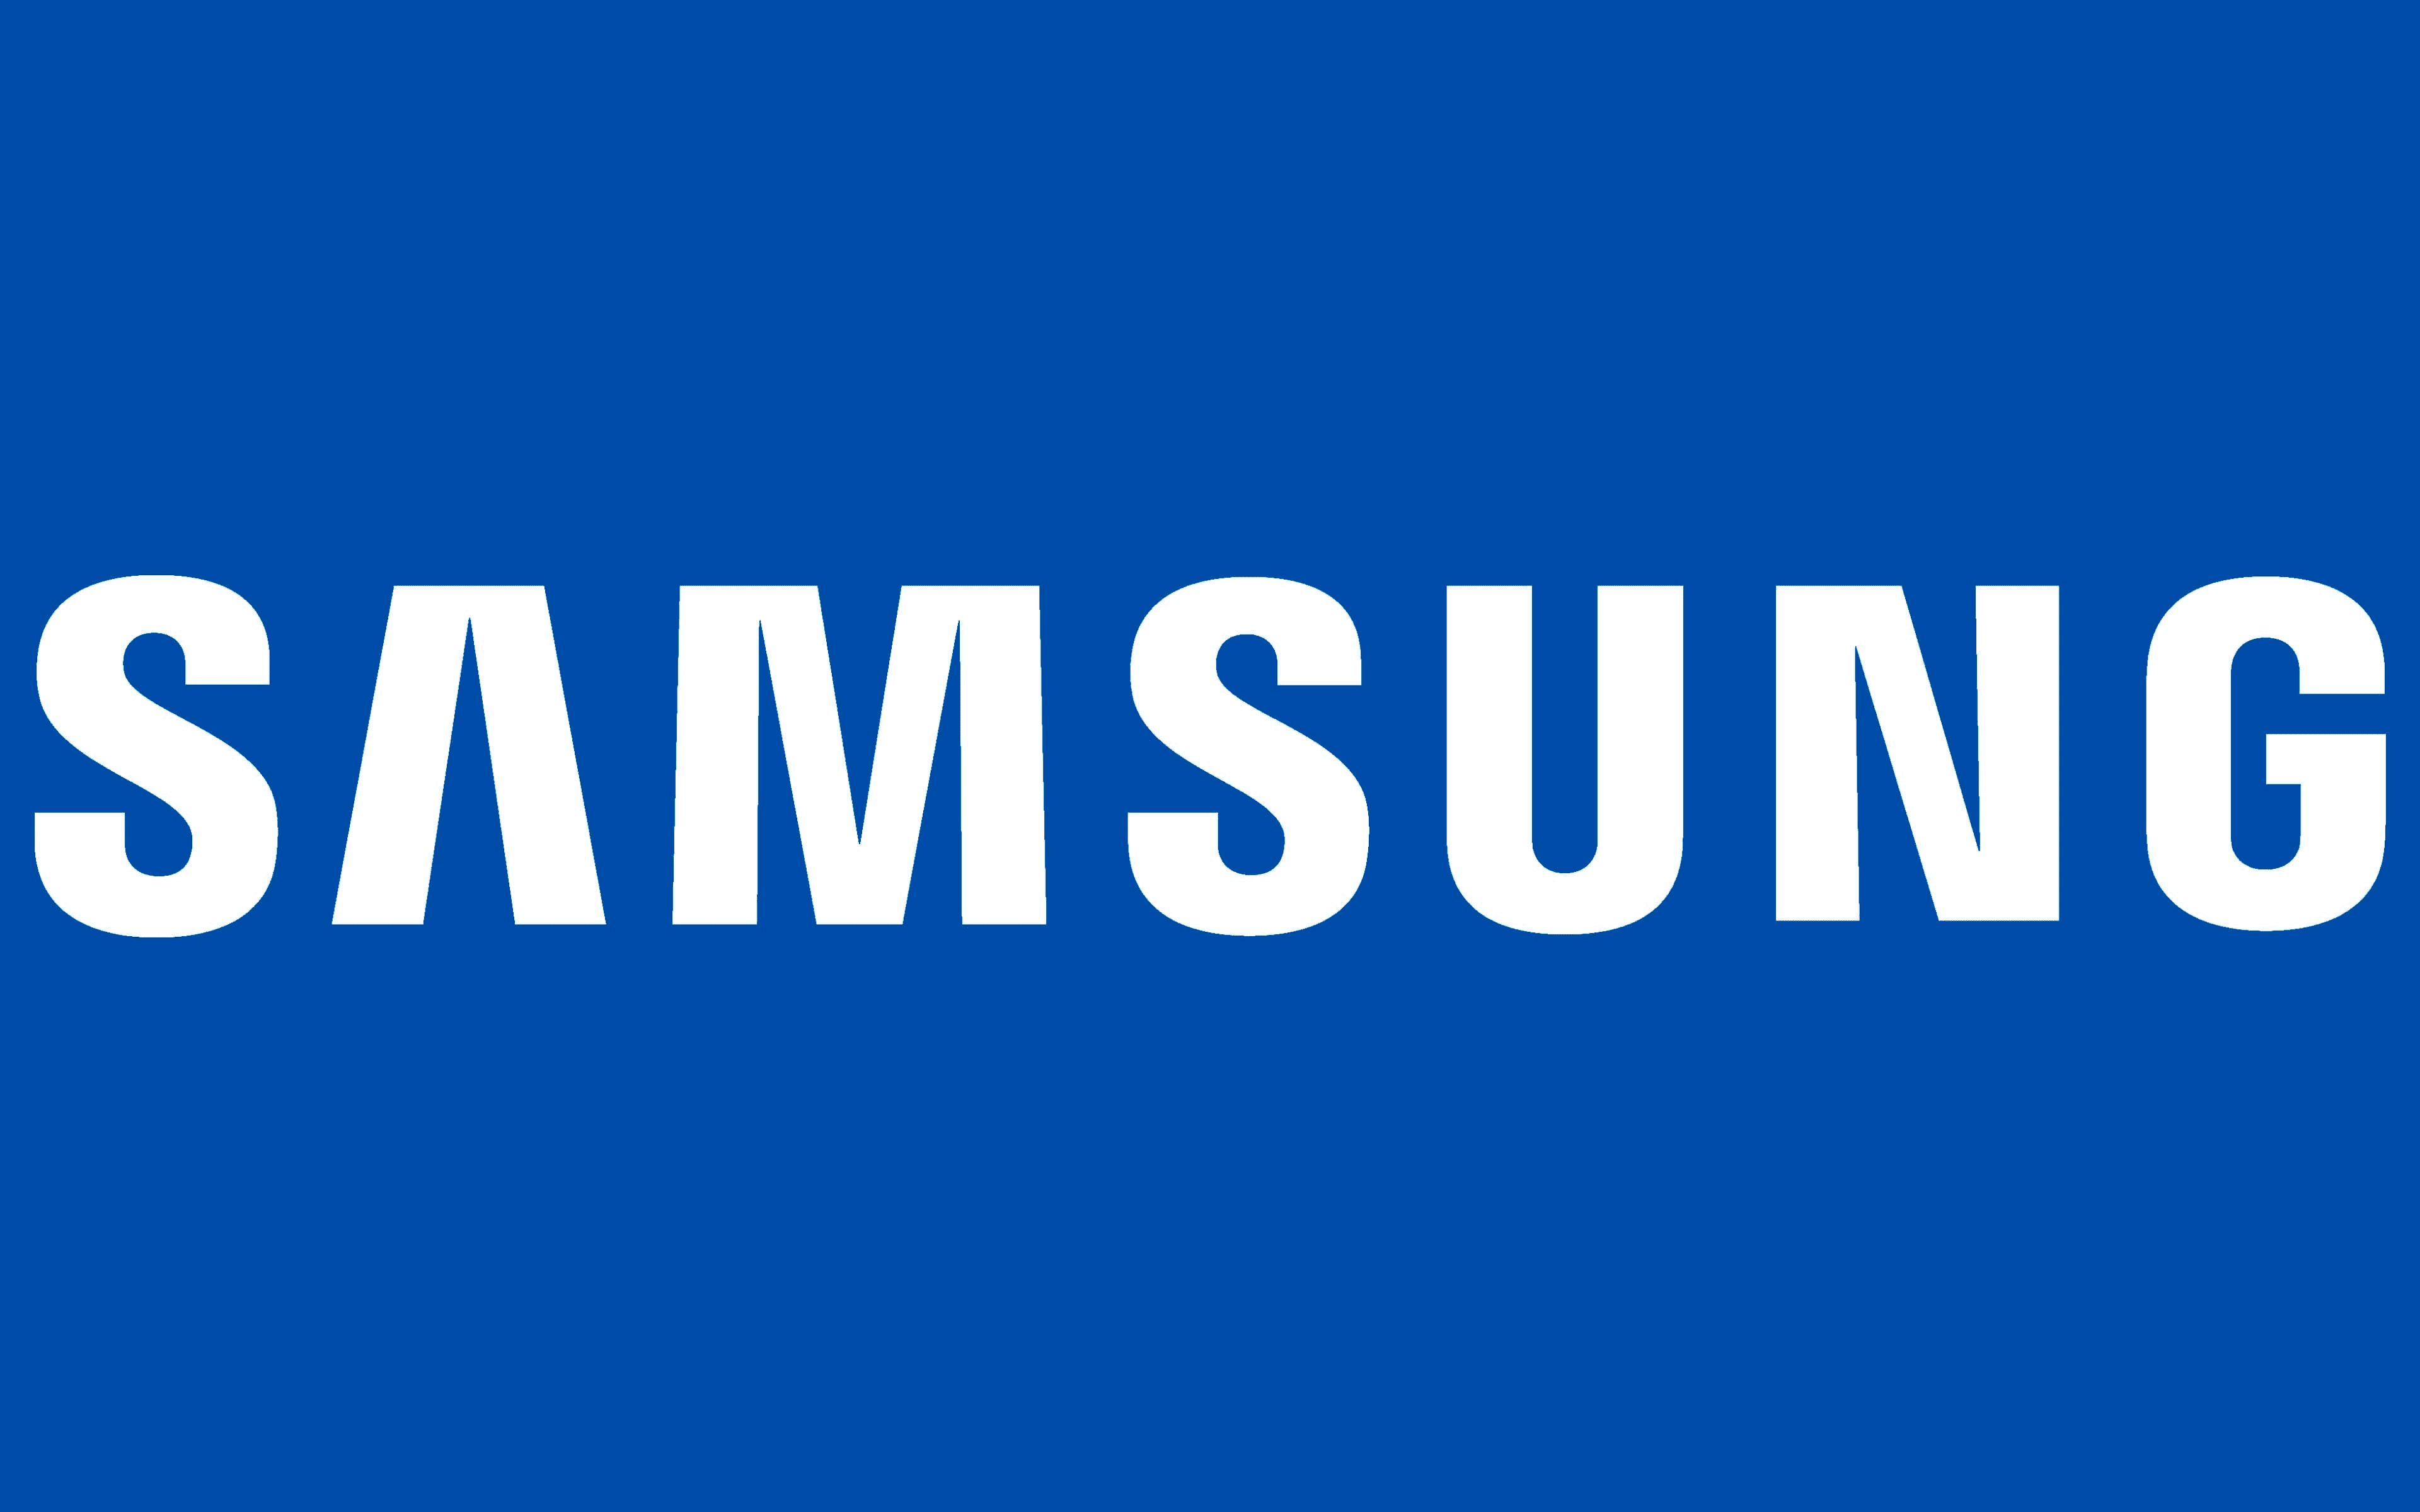 Màn Hình Gaming Samsung 27 inch Odyssey OLED G6 G60SD QHD 360Hz LS27DG602SEXXV - Hàng chính hãng